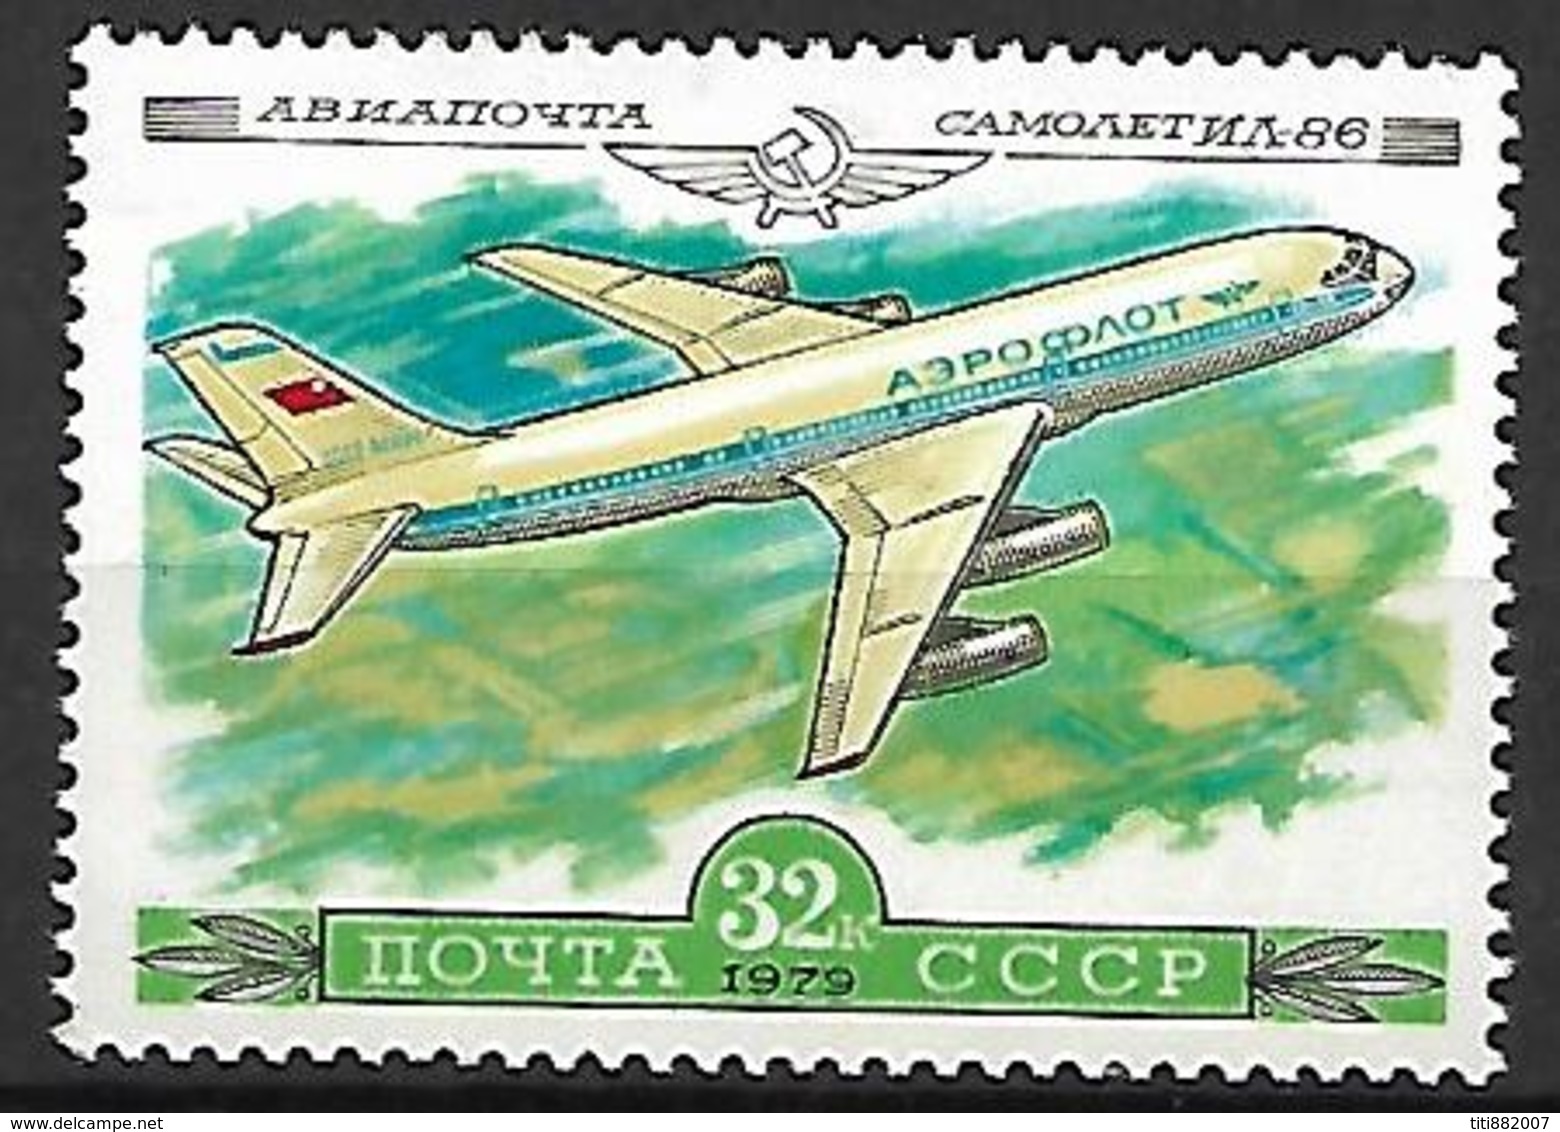 RUSSIE  /   URSS    -   Poste Aérienne  -   1979.    Y&T N° 141 *.  Avion - Ungebraucht